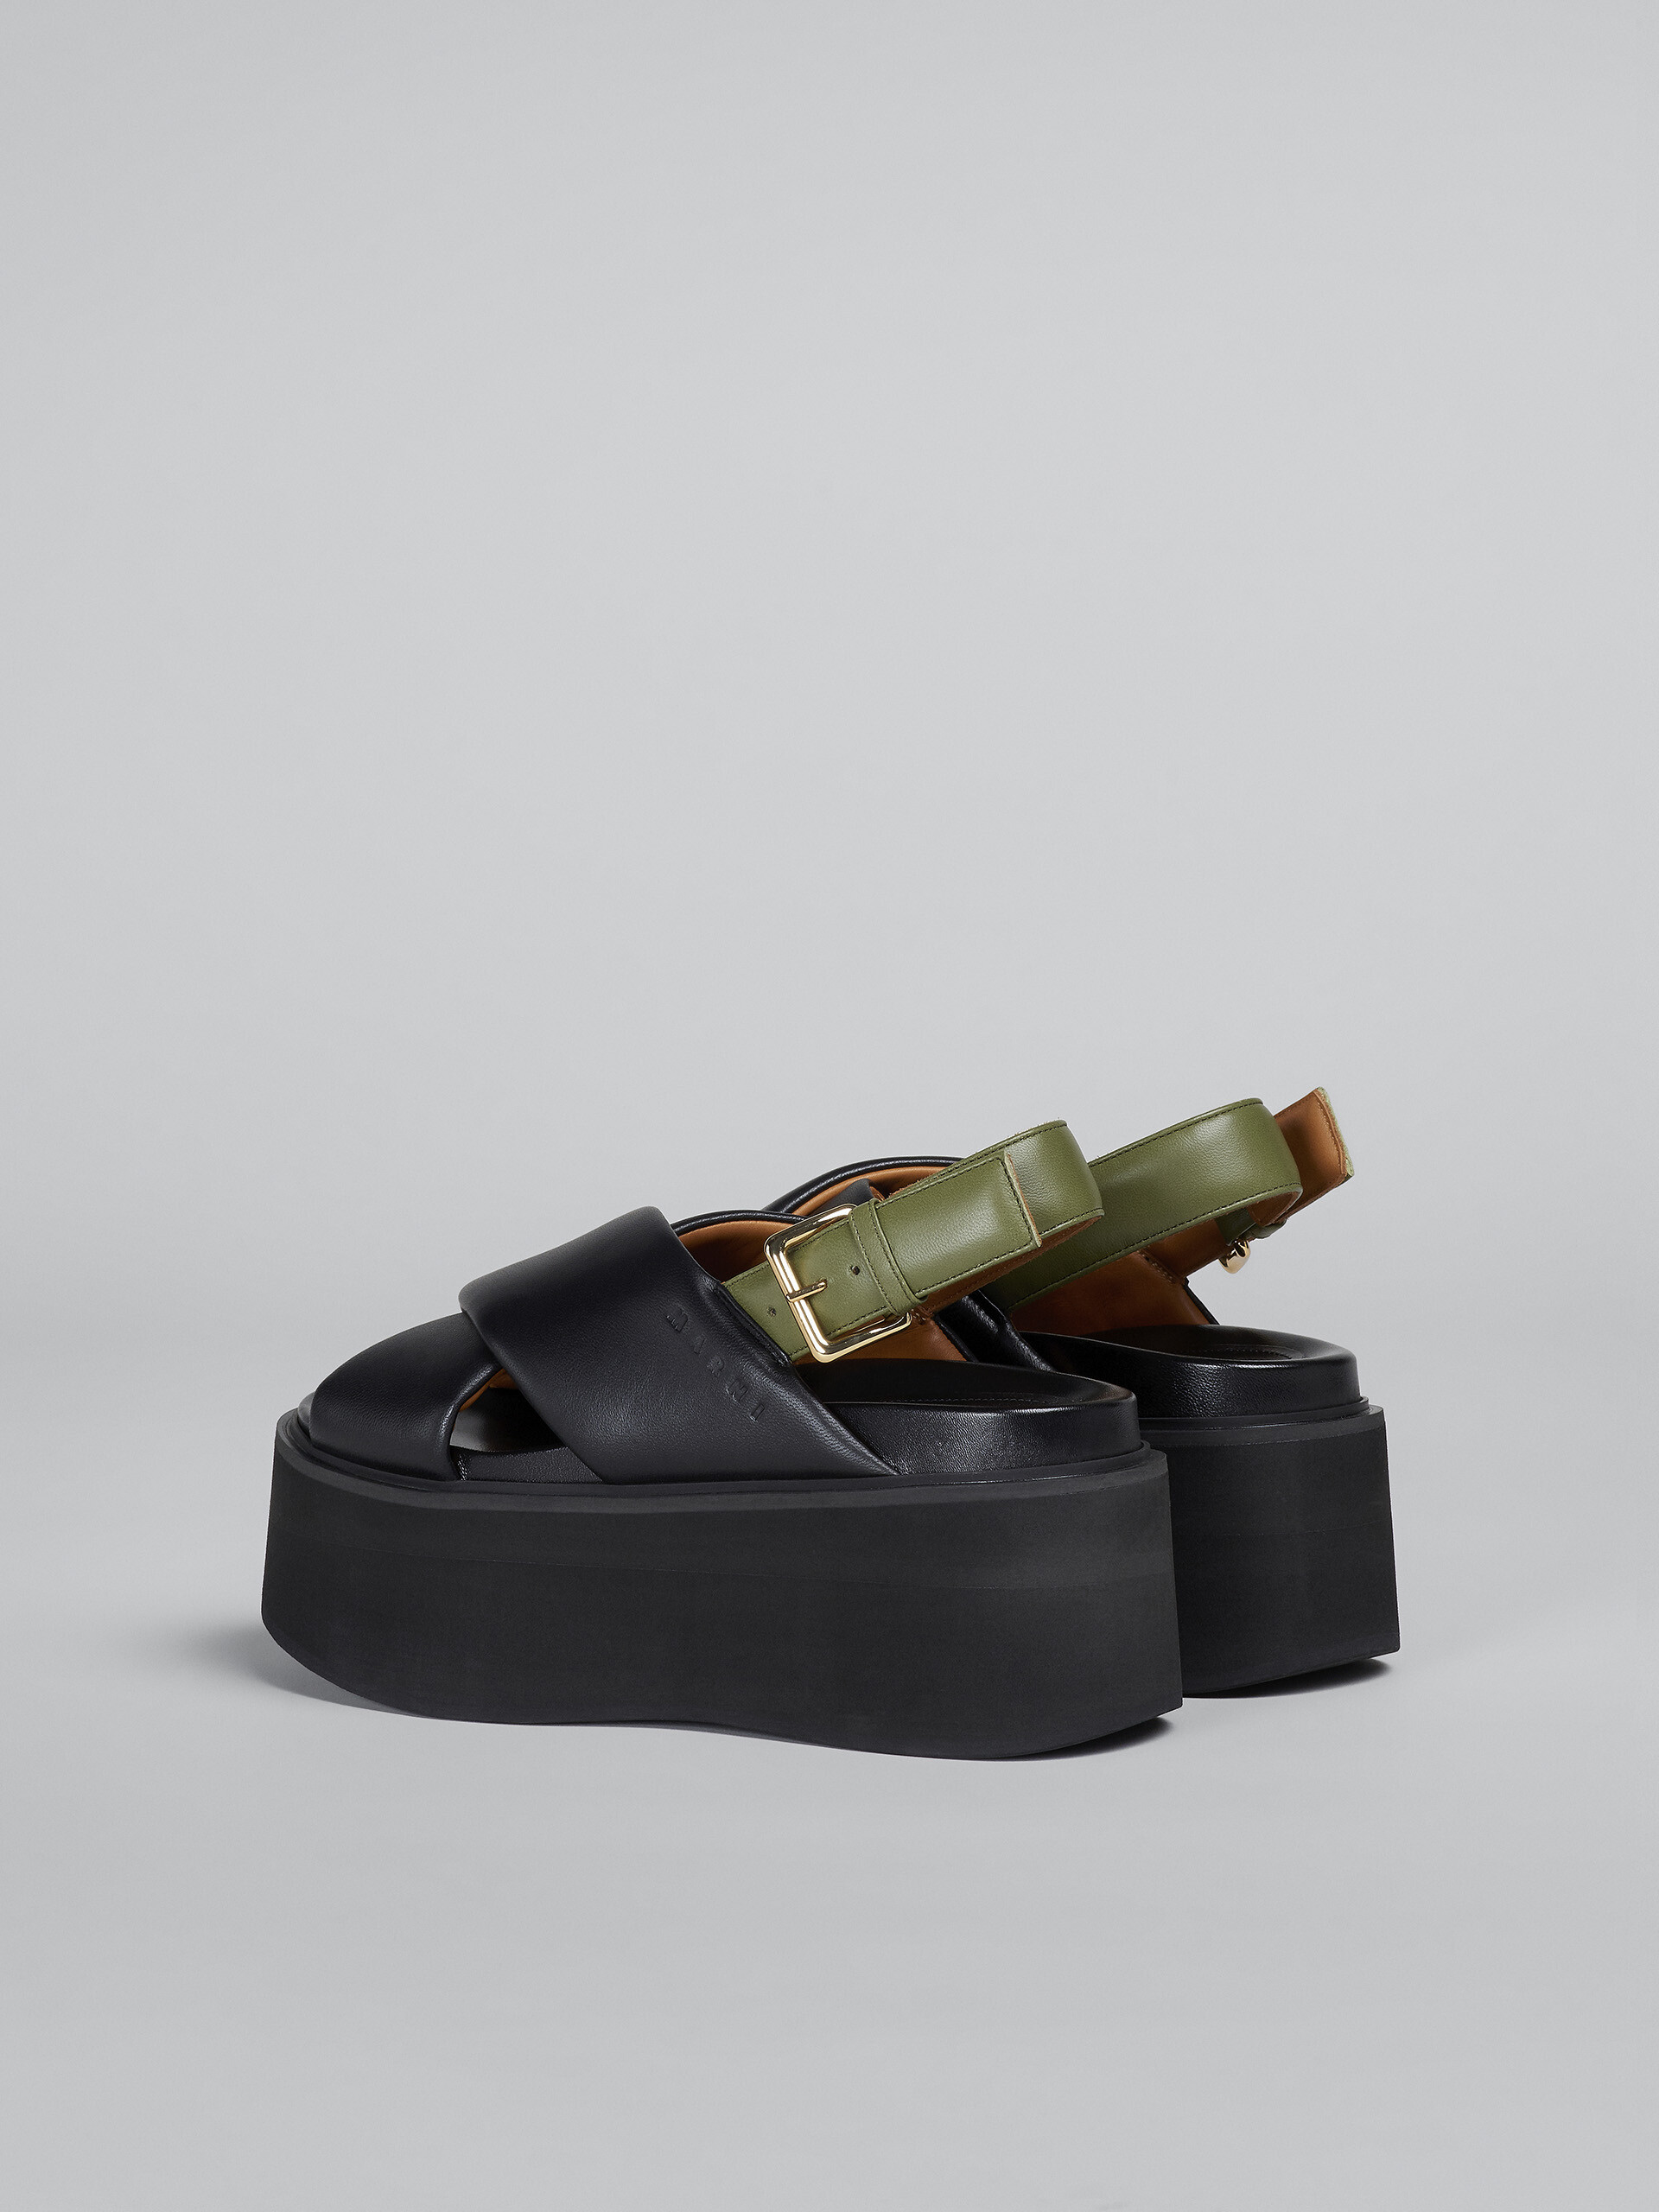 블랙 및 그린 가죽 웨지 - Sandals - Image 3